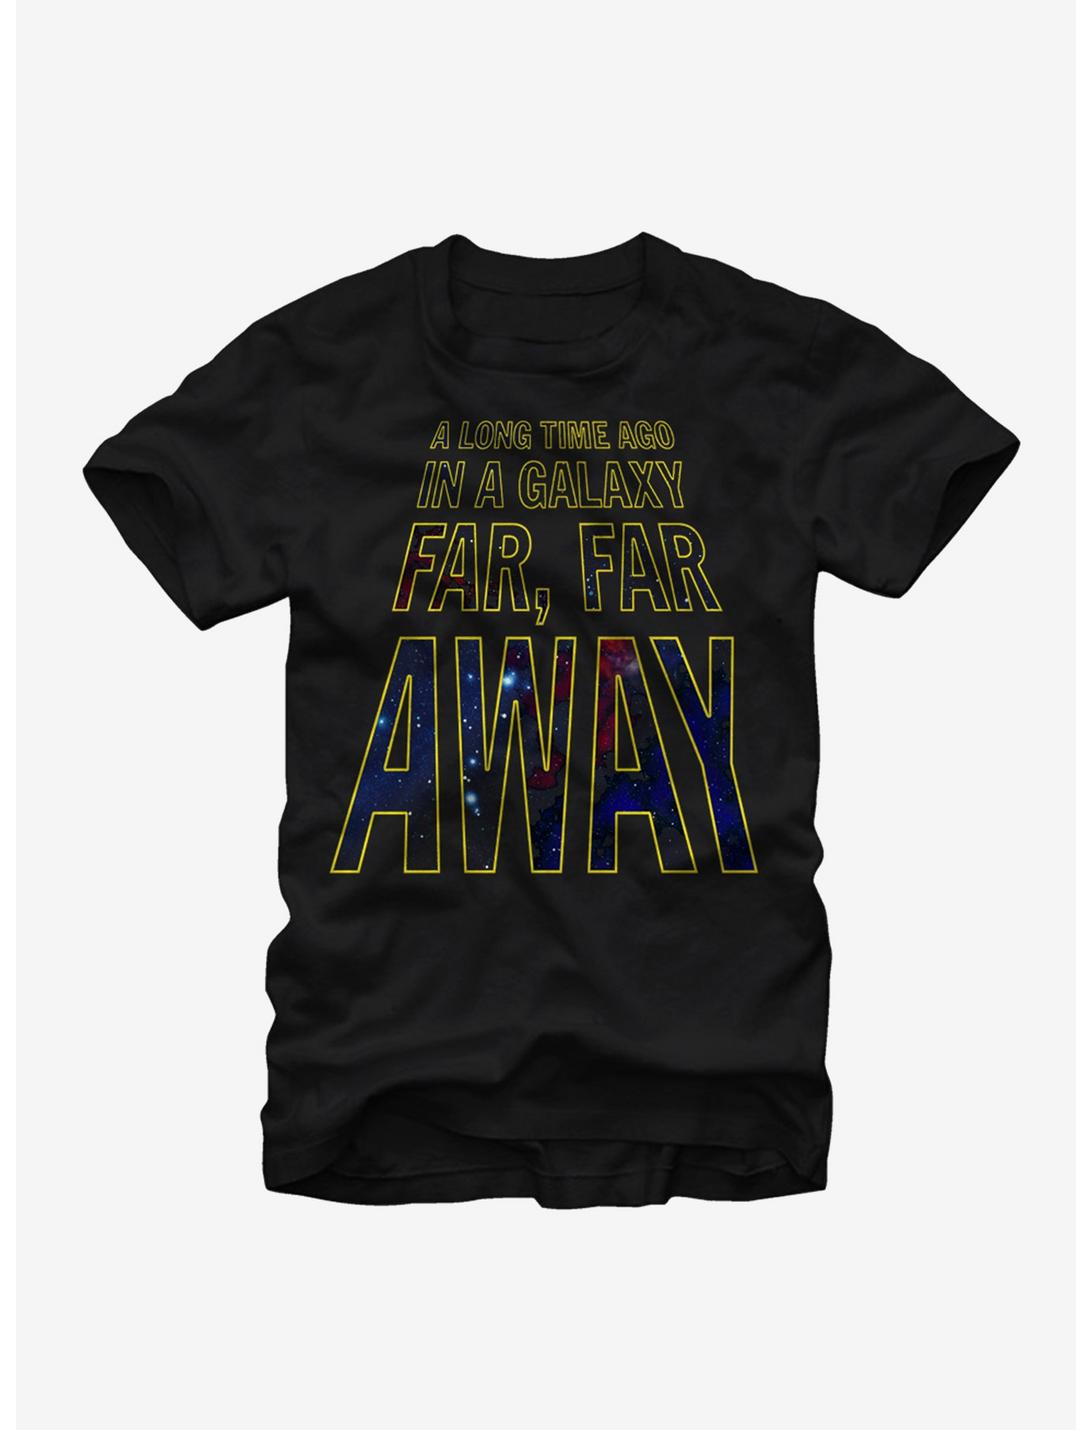 Plus Size Star Wars Opening Crawl T-Shirt, BLACK, hi-res